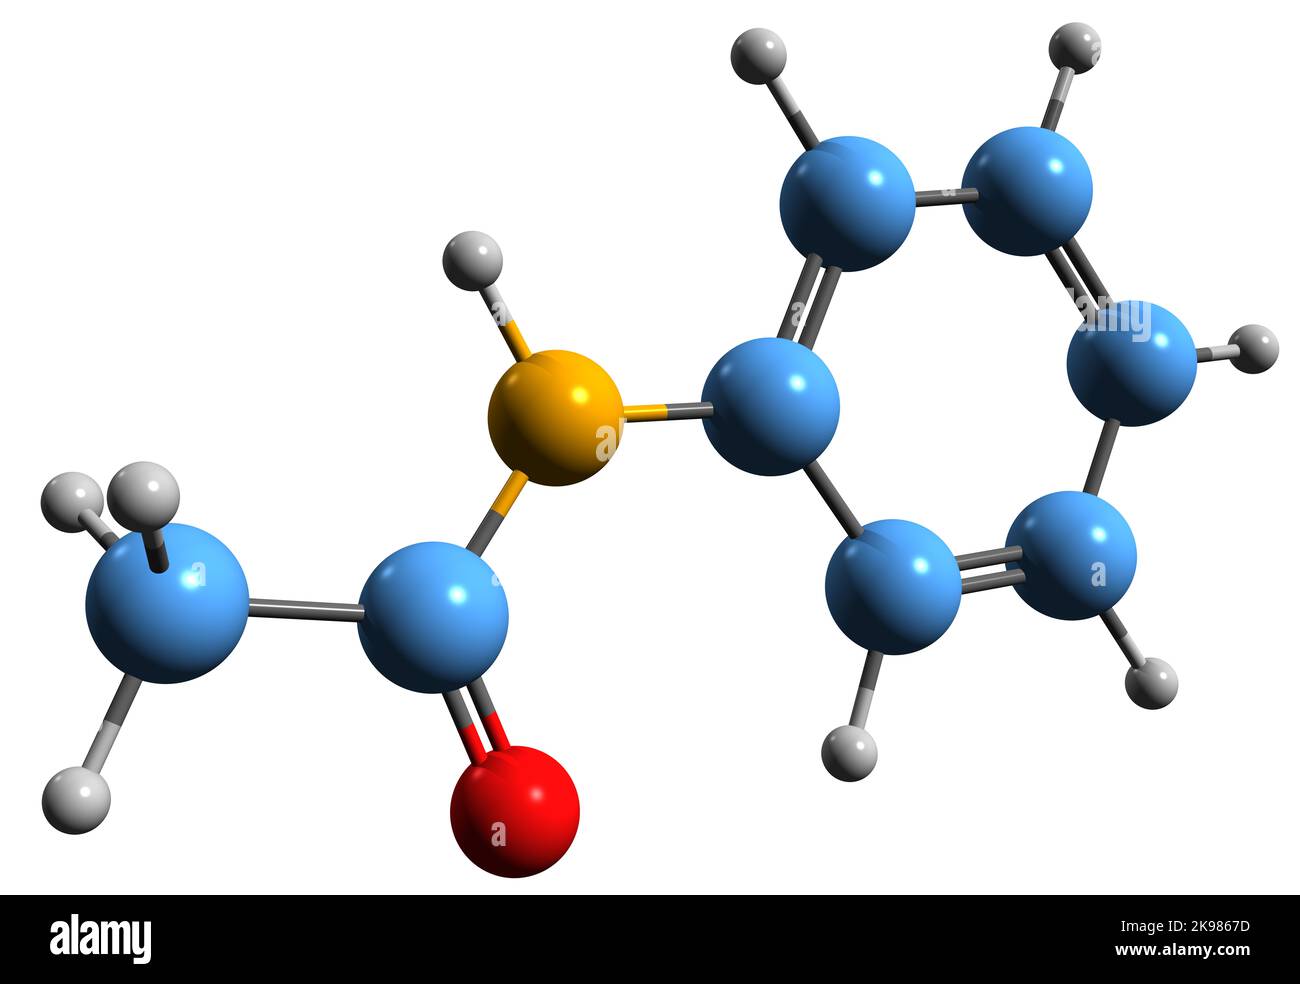 3D Bild der Skelettformel von Acetanilid - molekulare chemische Struktur  von N-Phenylacetamid auf weißem Hintergrund isoliert Stockfotografie - Alamy